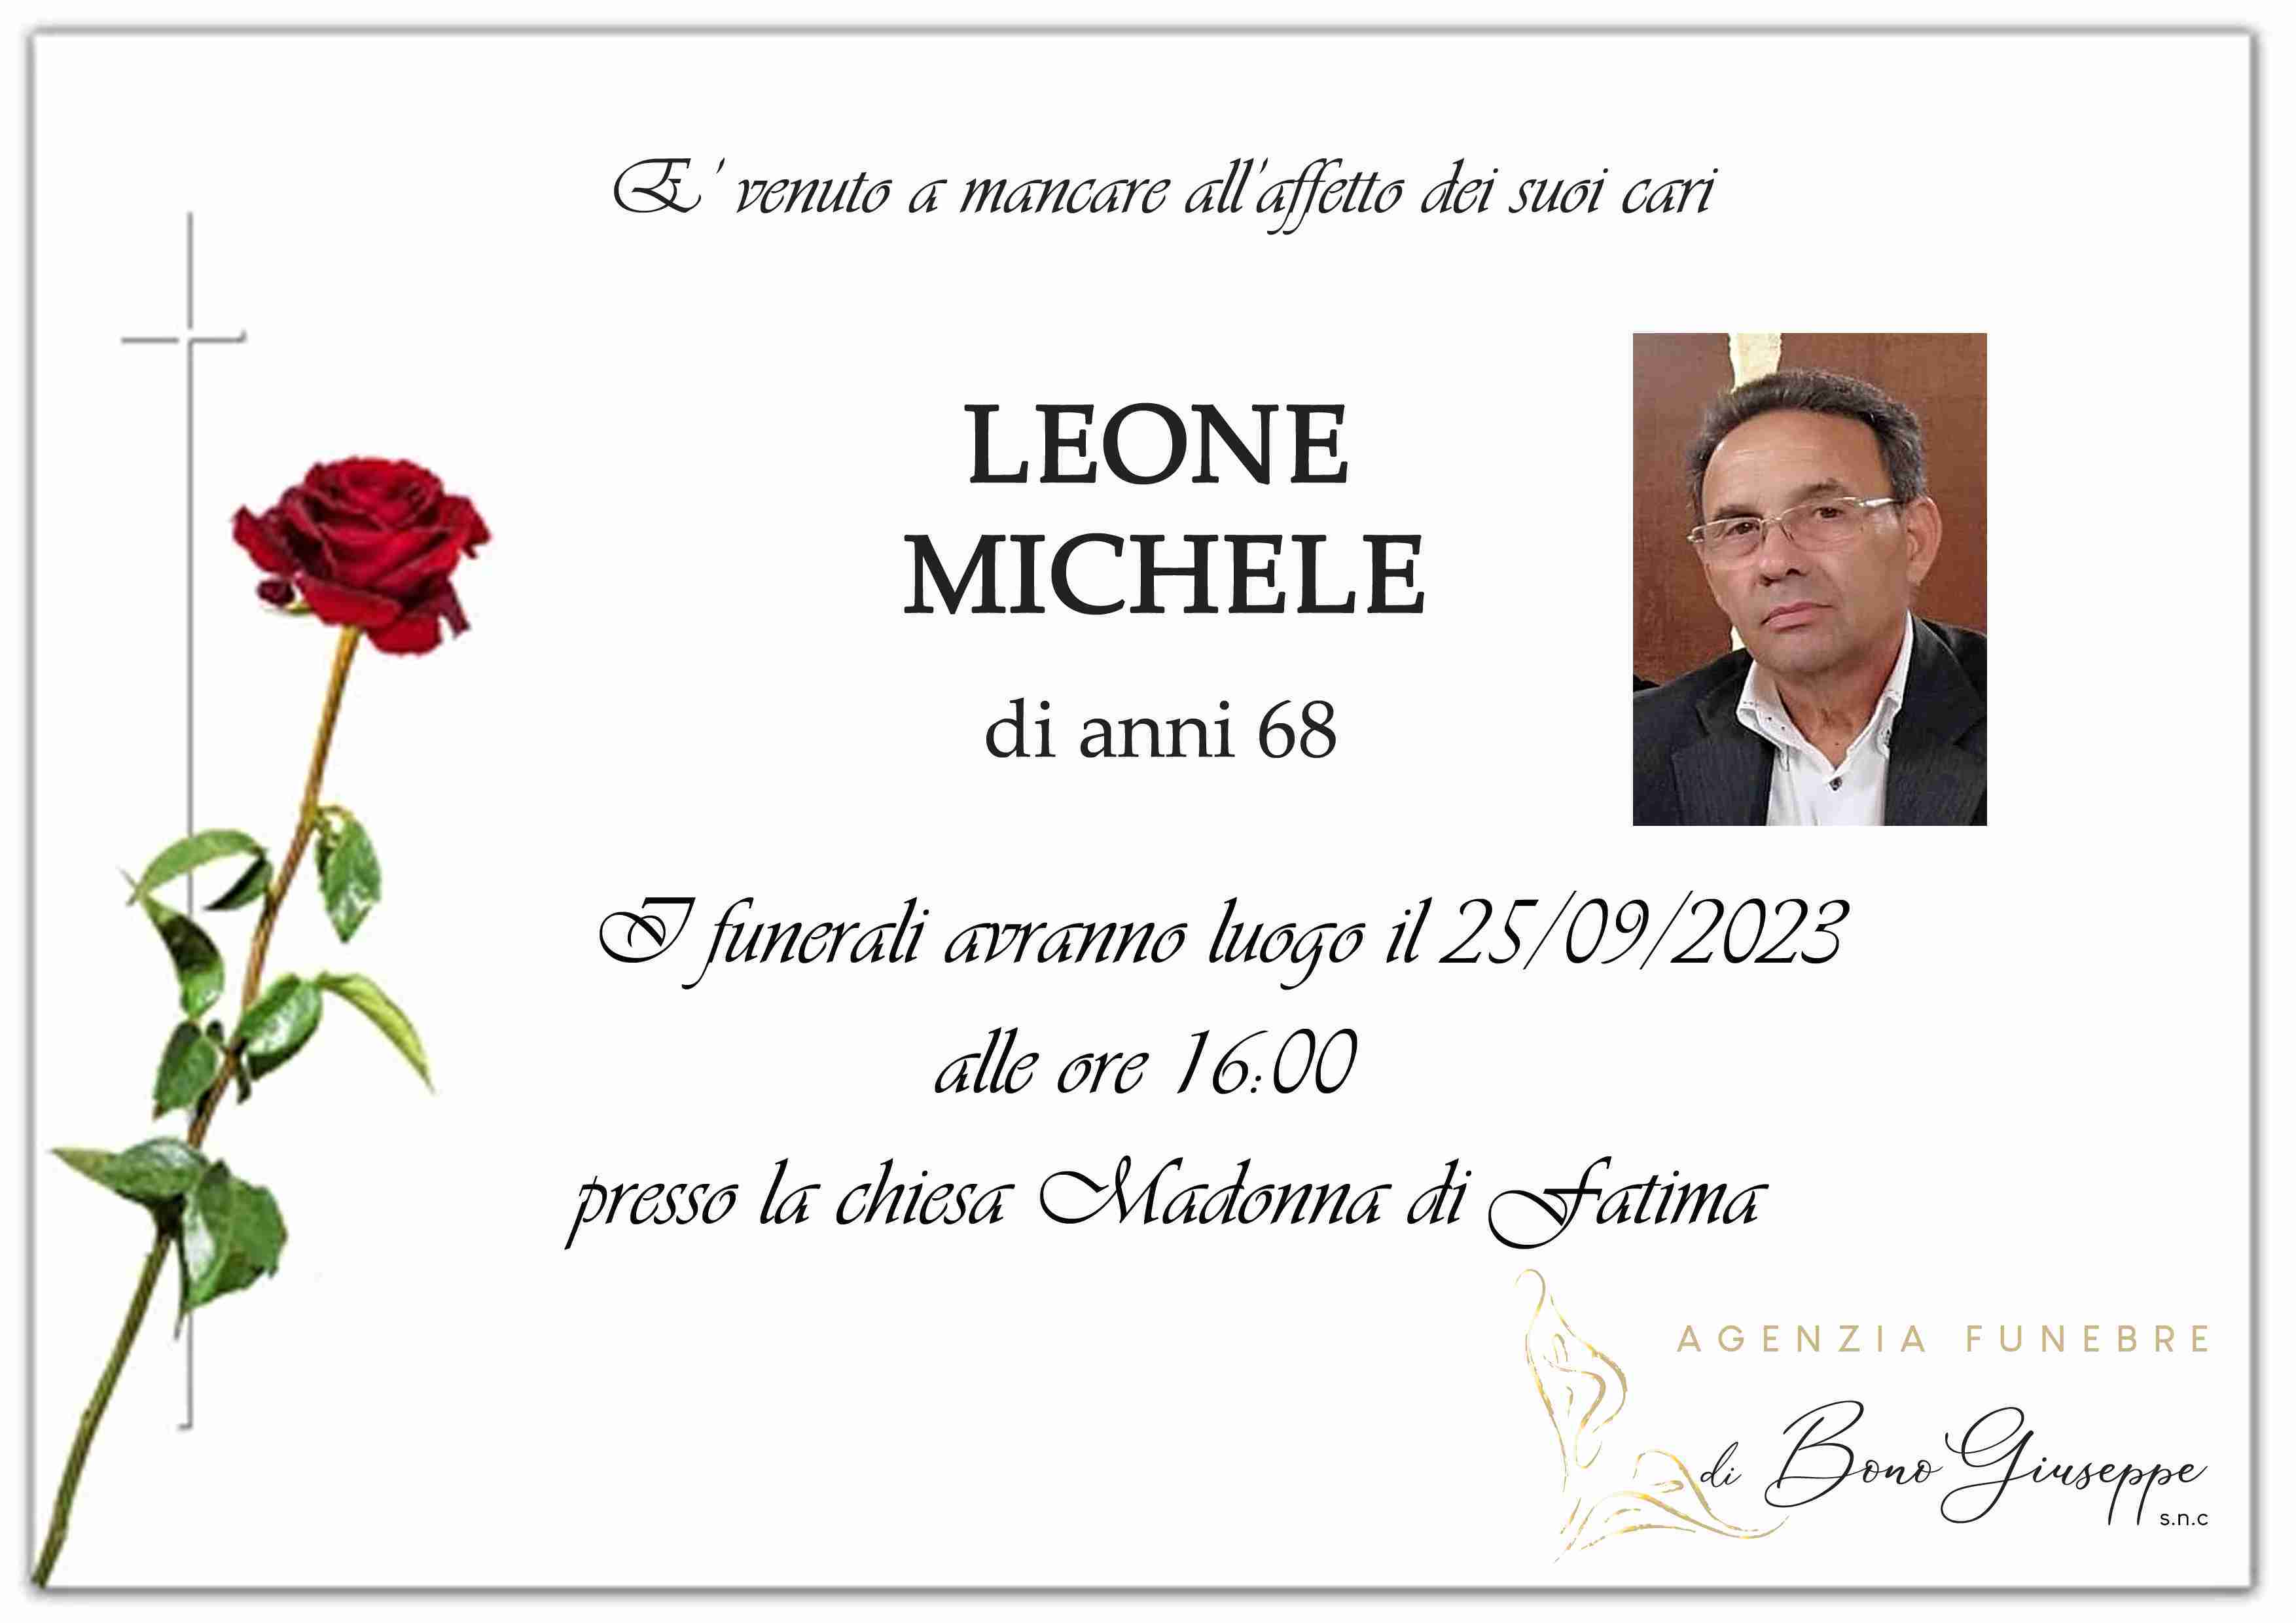 Michele Leone